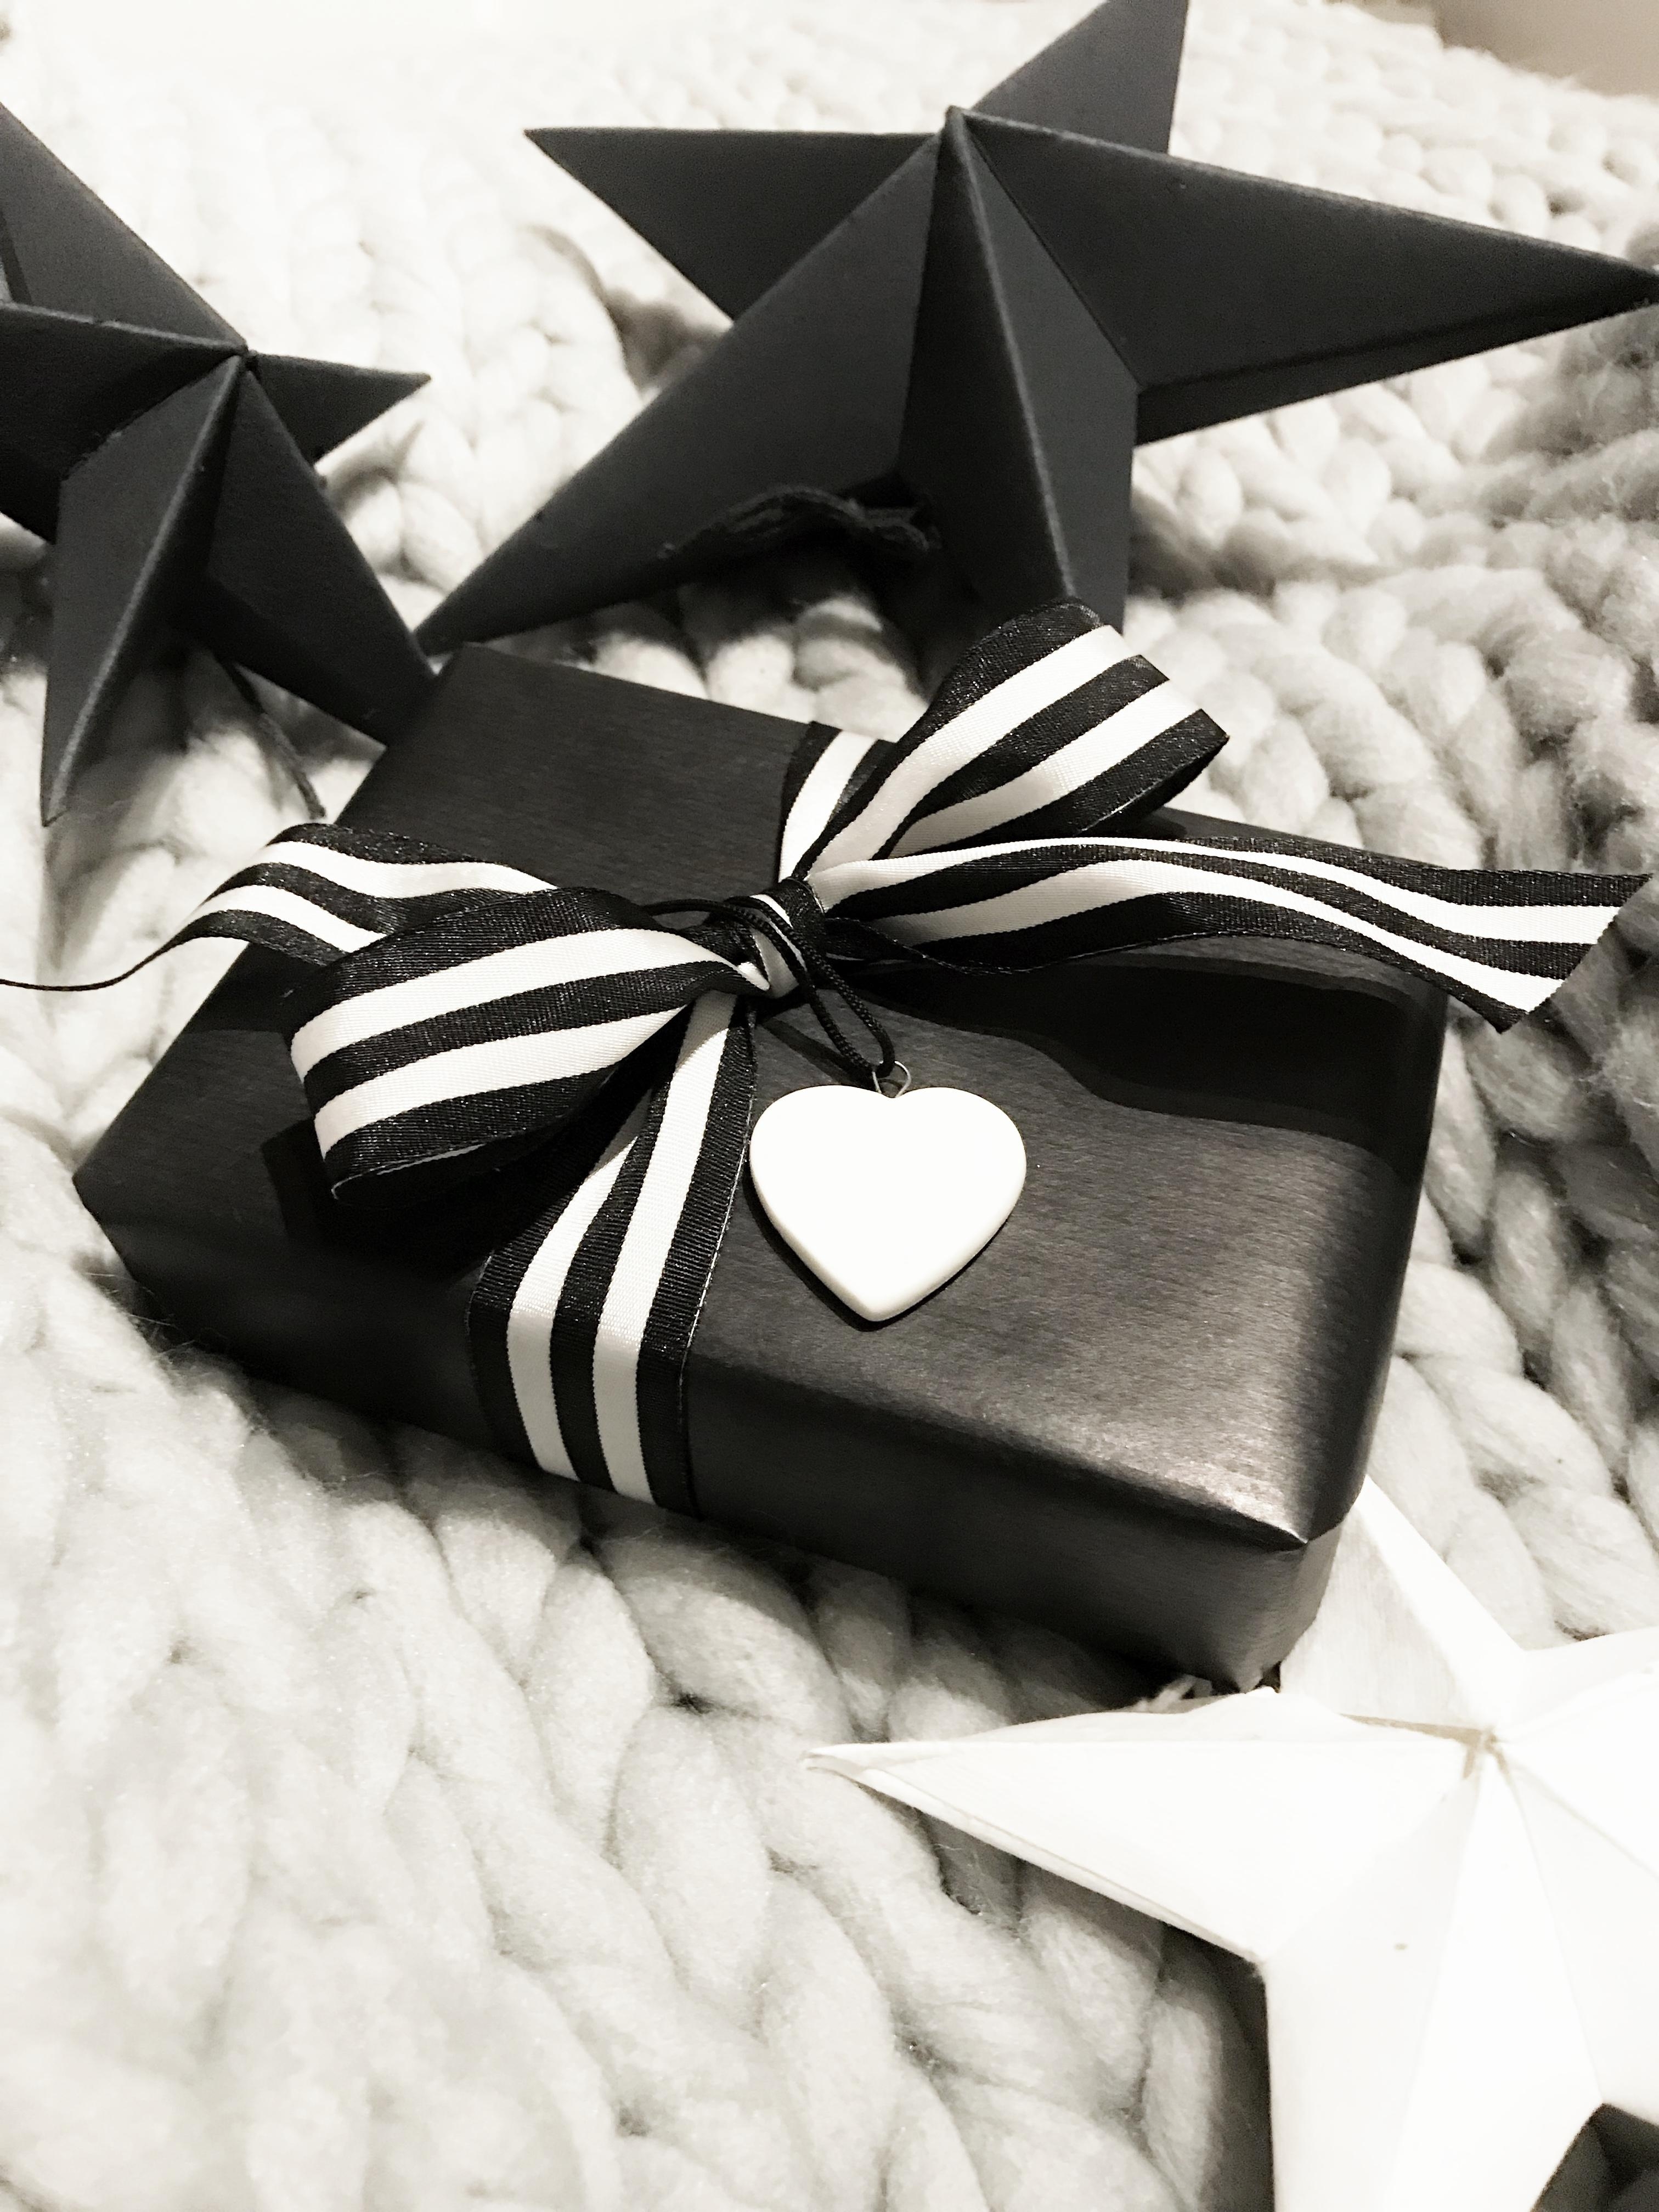 Ein Geschenk habe ich schon mal! #weihnachtswahnsinn #geschenke #sterne #schwarzweiss #plaid #verpackung #weihnachtsdeko